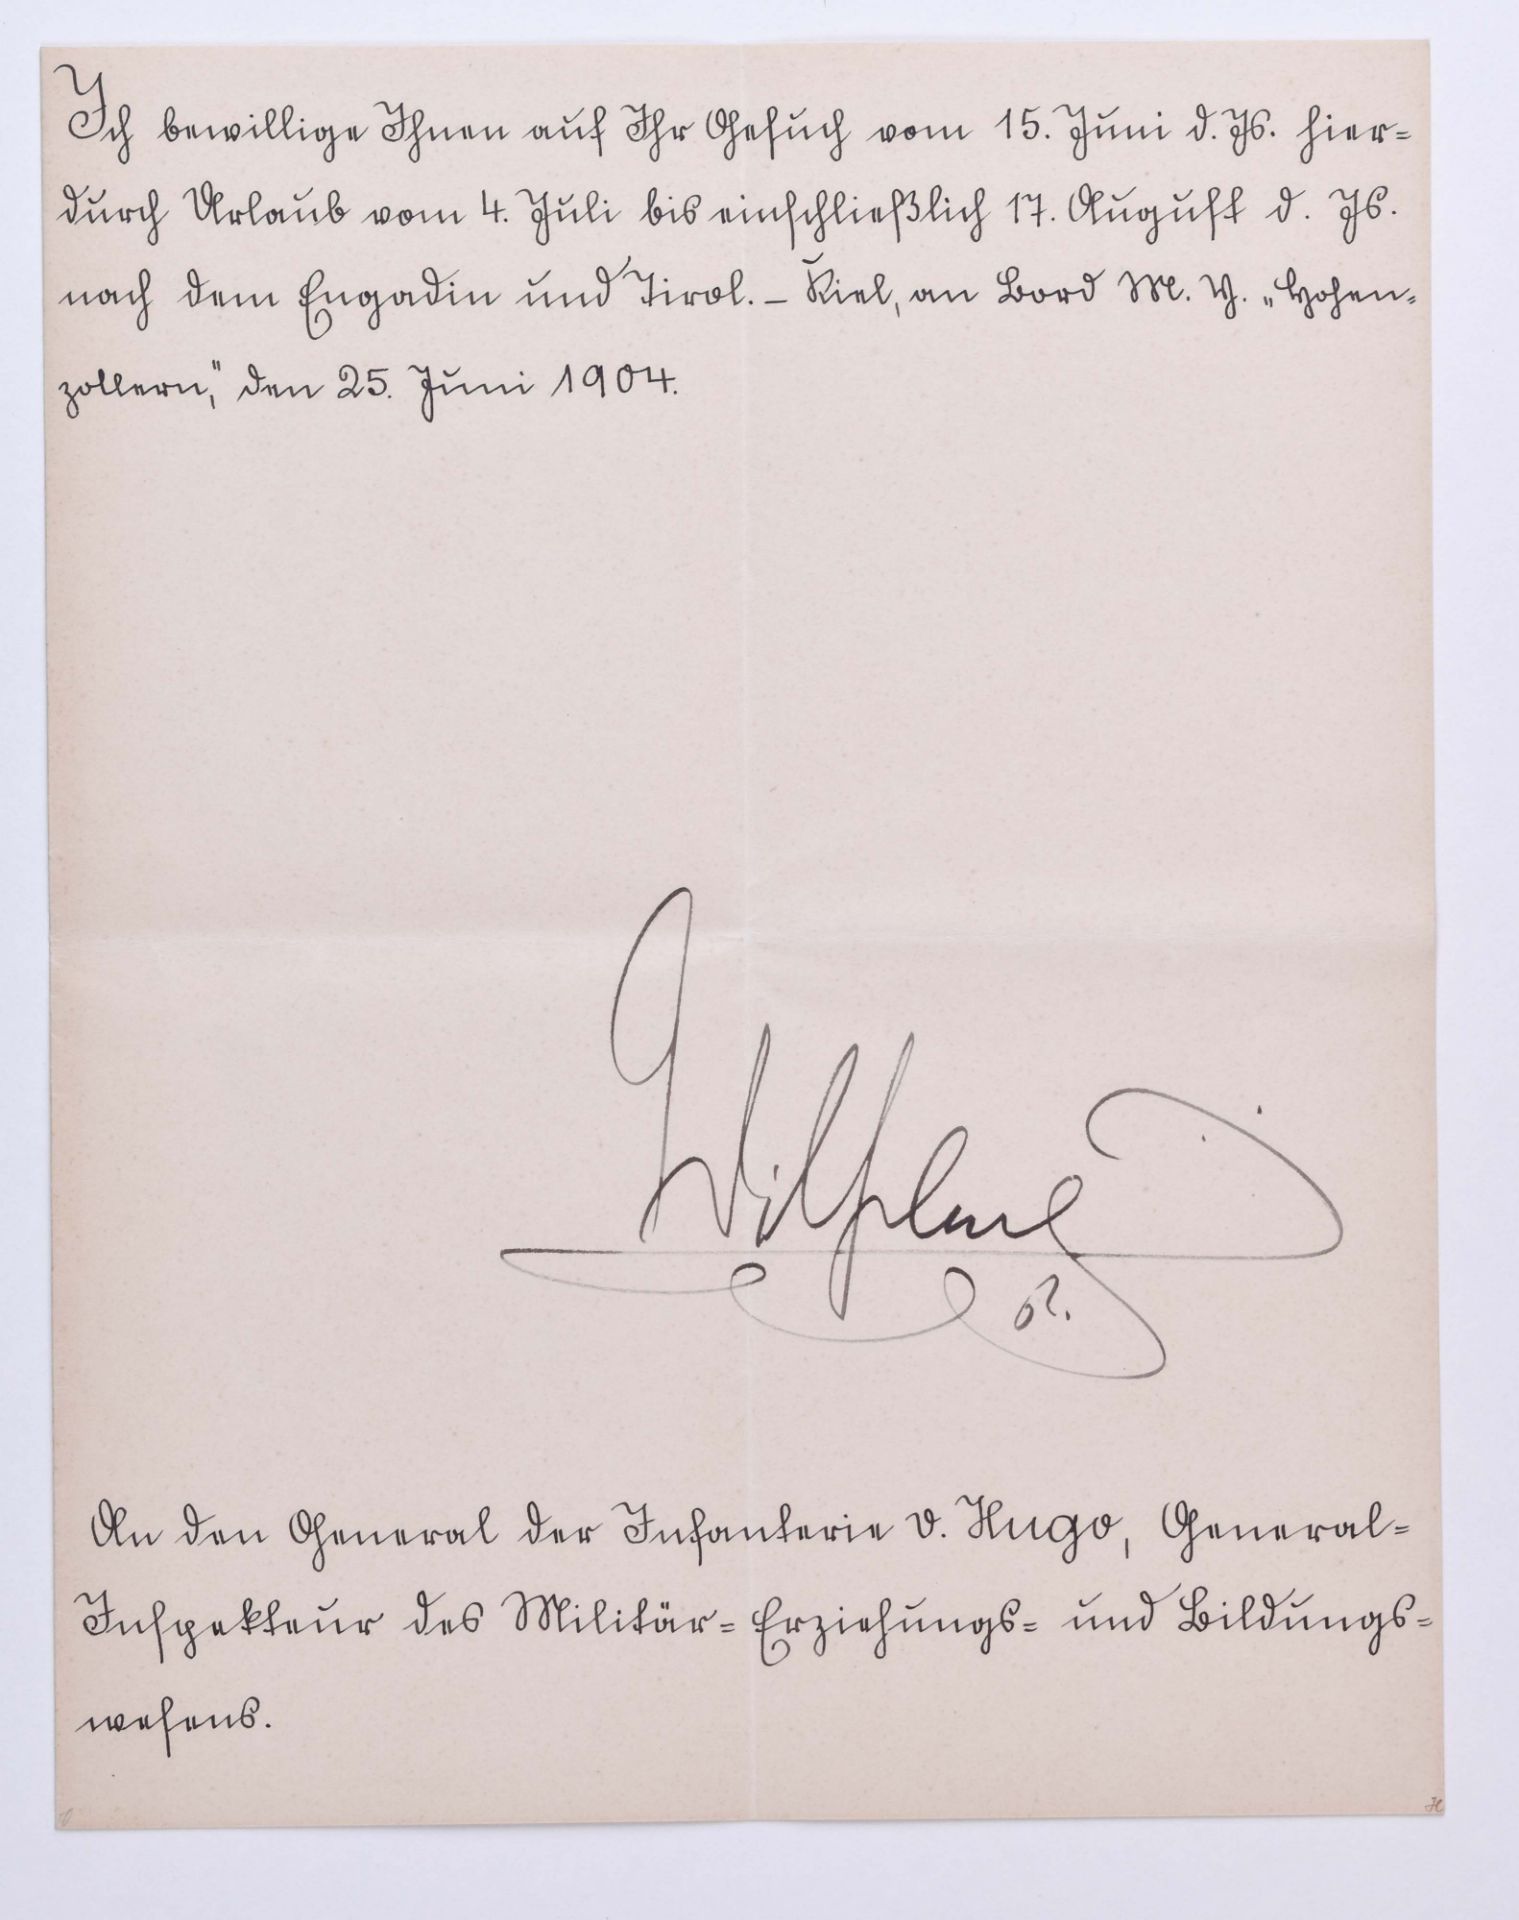 Urlaubsbewilligung vom 25.6.1904Urlaubsbewilligung für General der Infantrie Carl-Georg von Hugo,